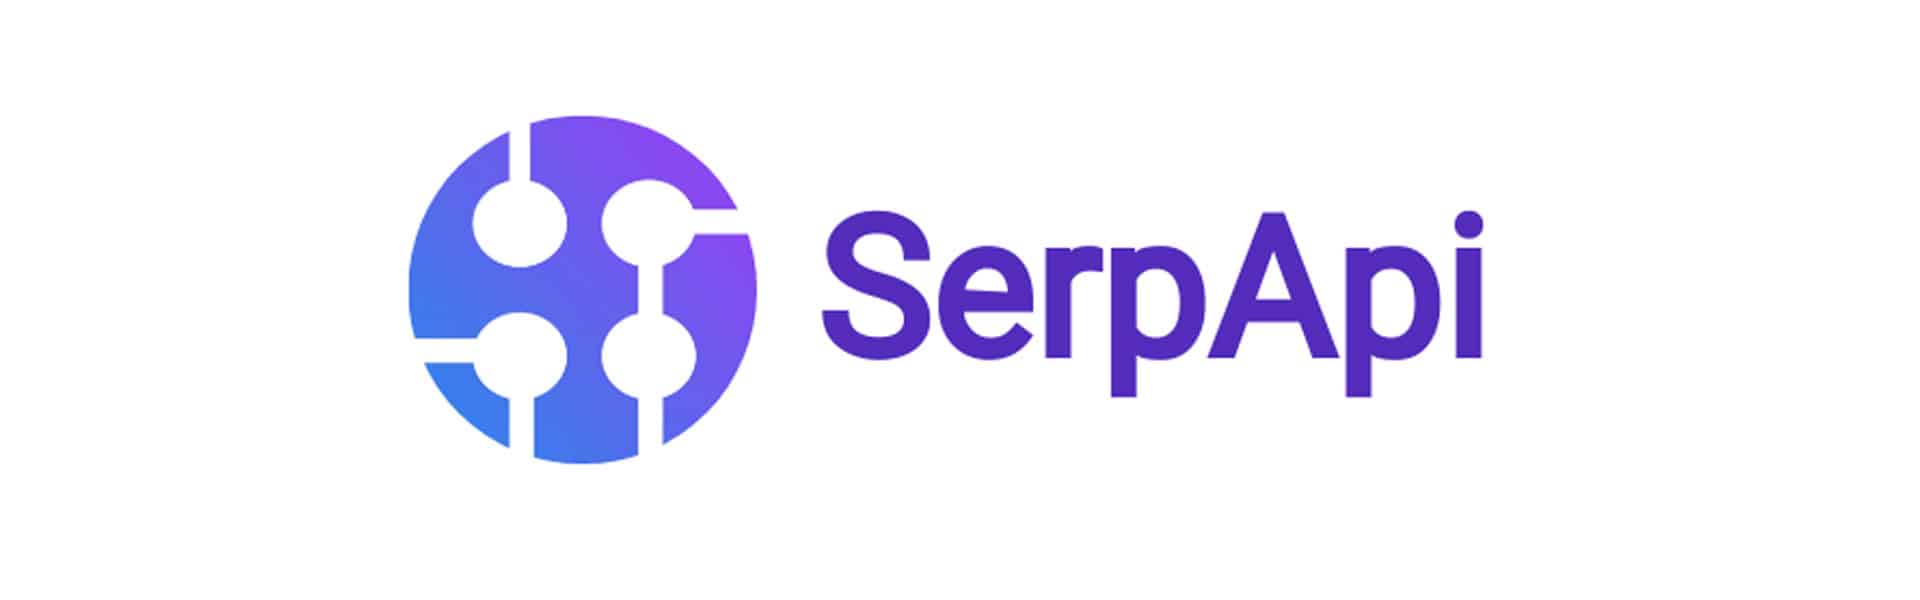 Scraping della SERP di Google con SerpApi